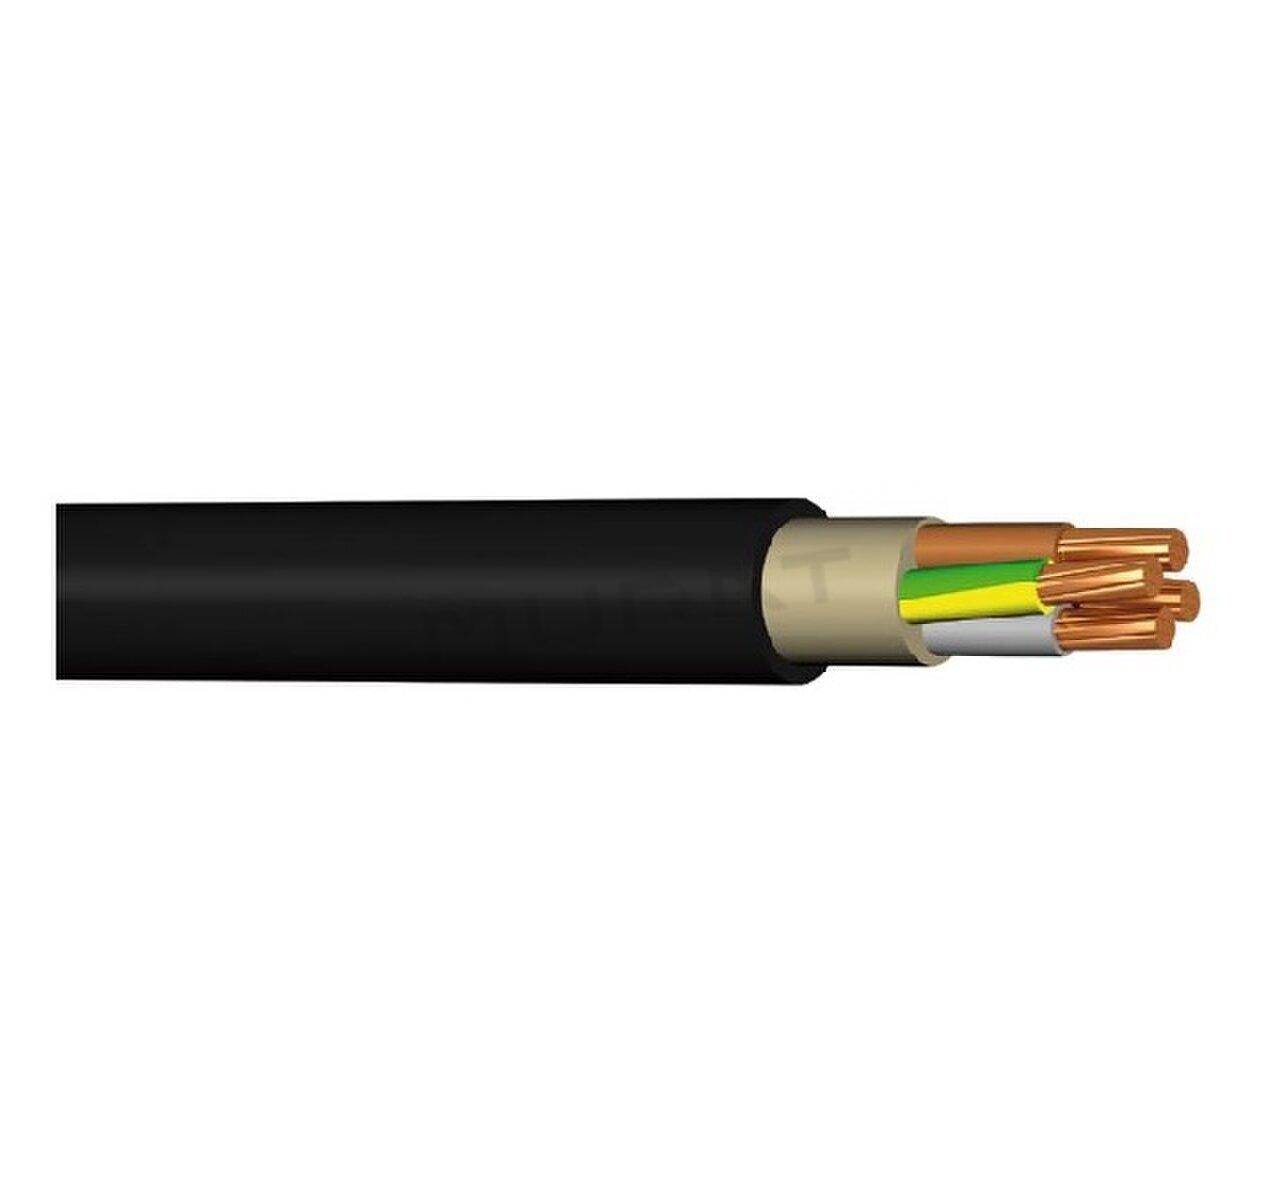 Kábel NYY-J 4x16 mm2 RE silový